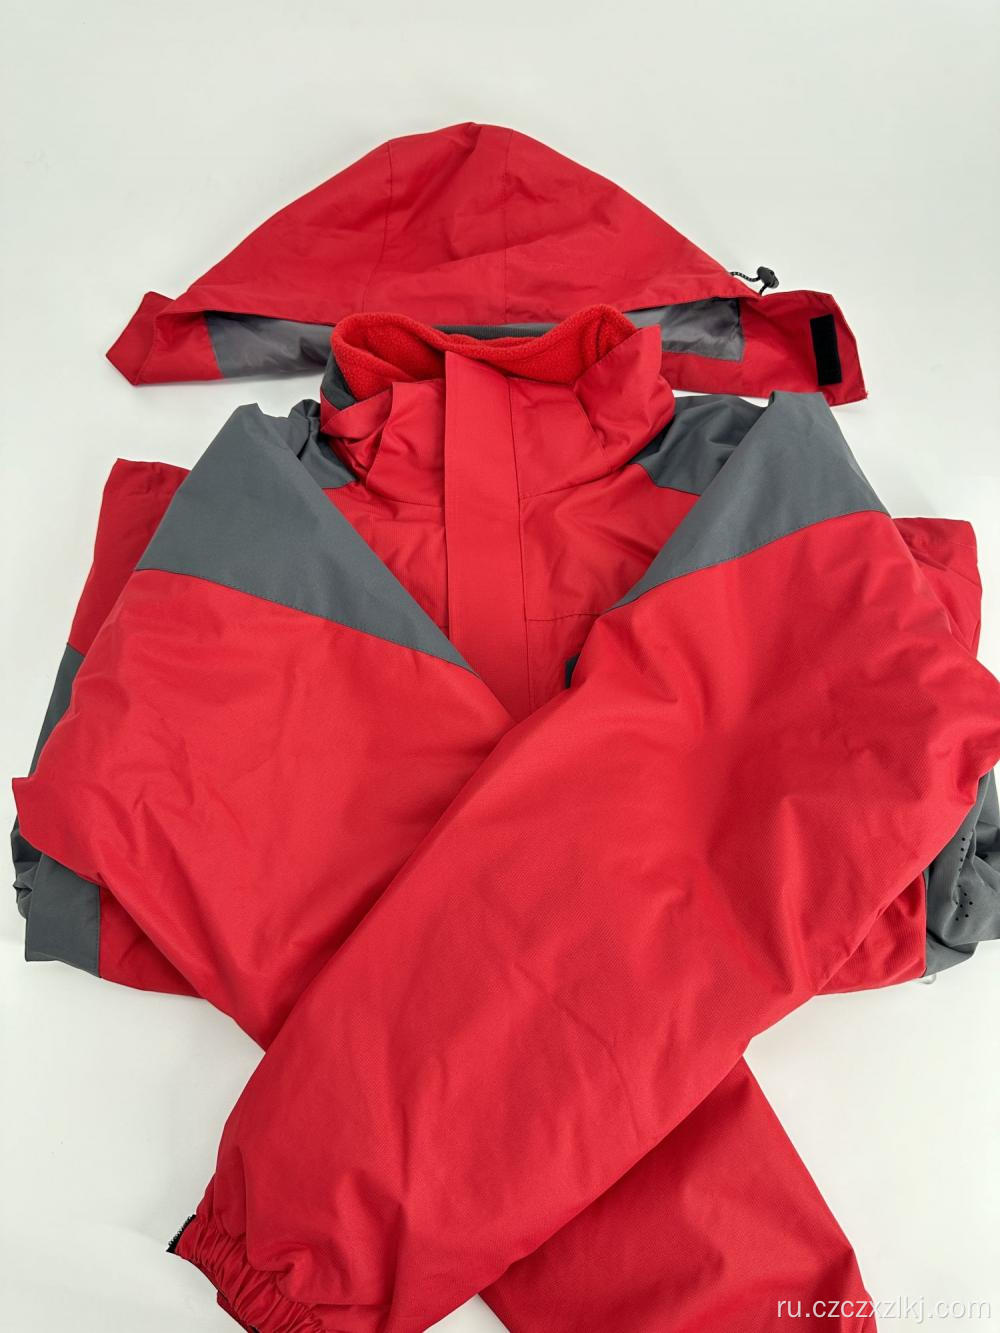 Толстый флисовый куртка ветропроницаемого покрытия